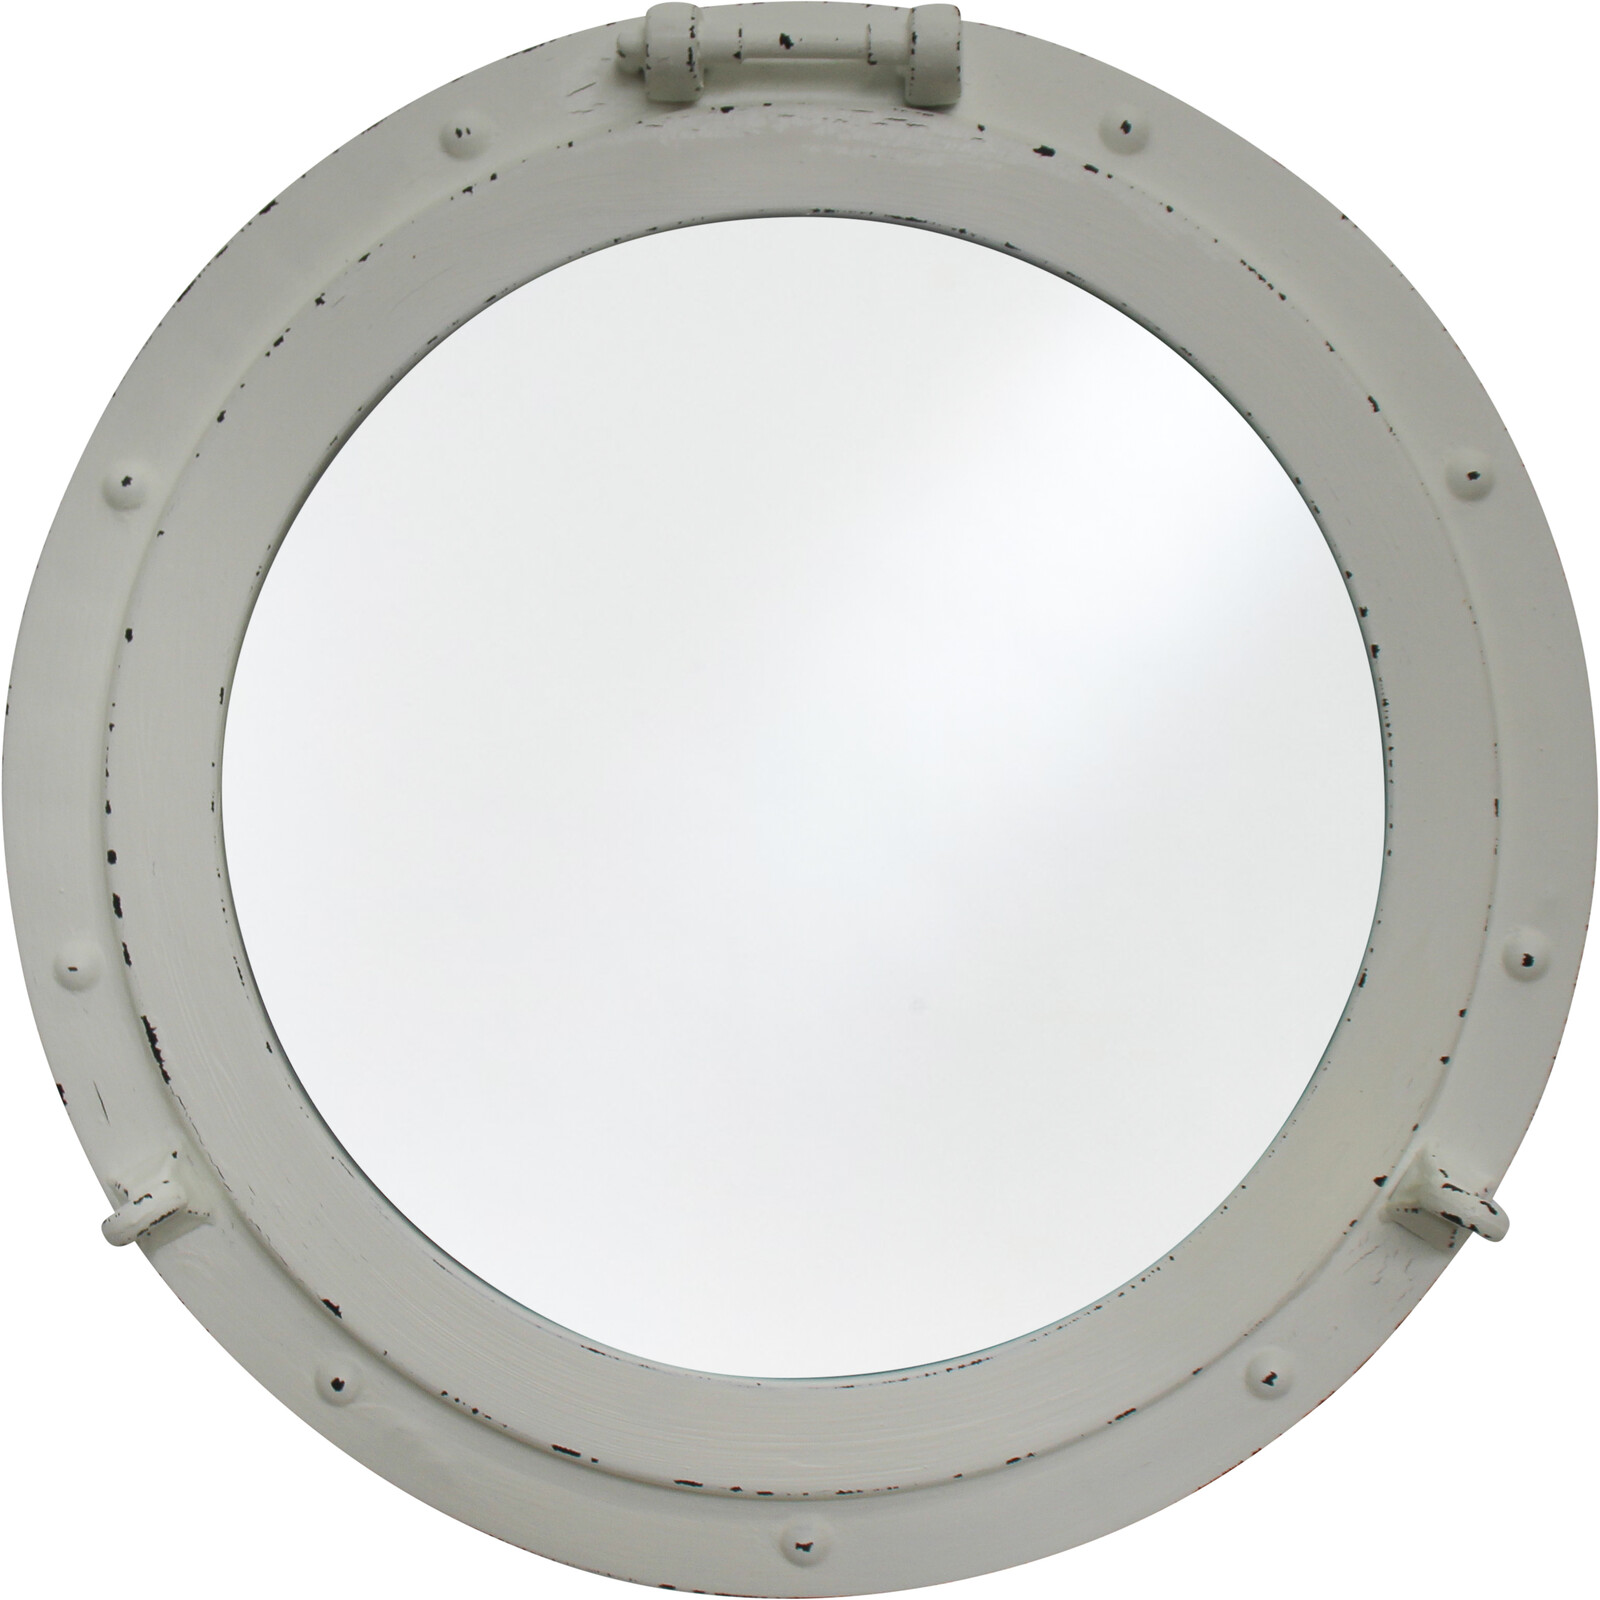 #Porthole Mirror White